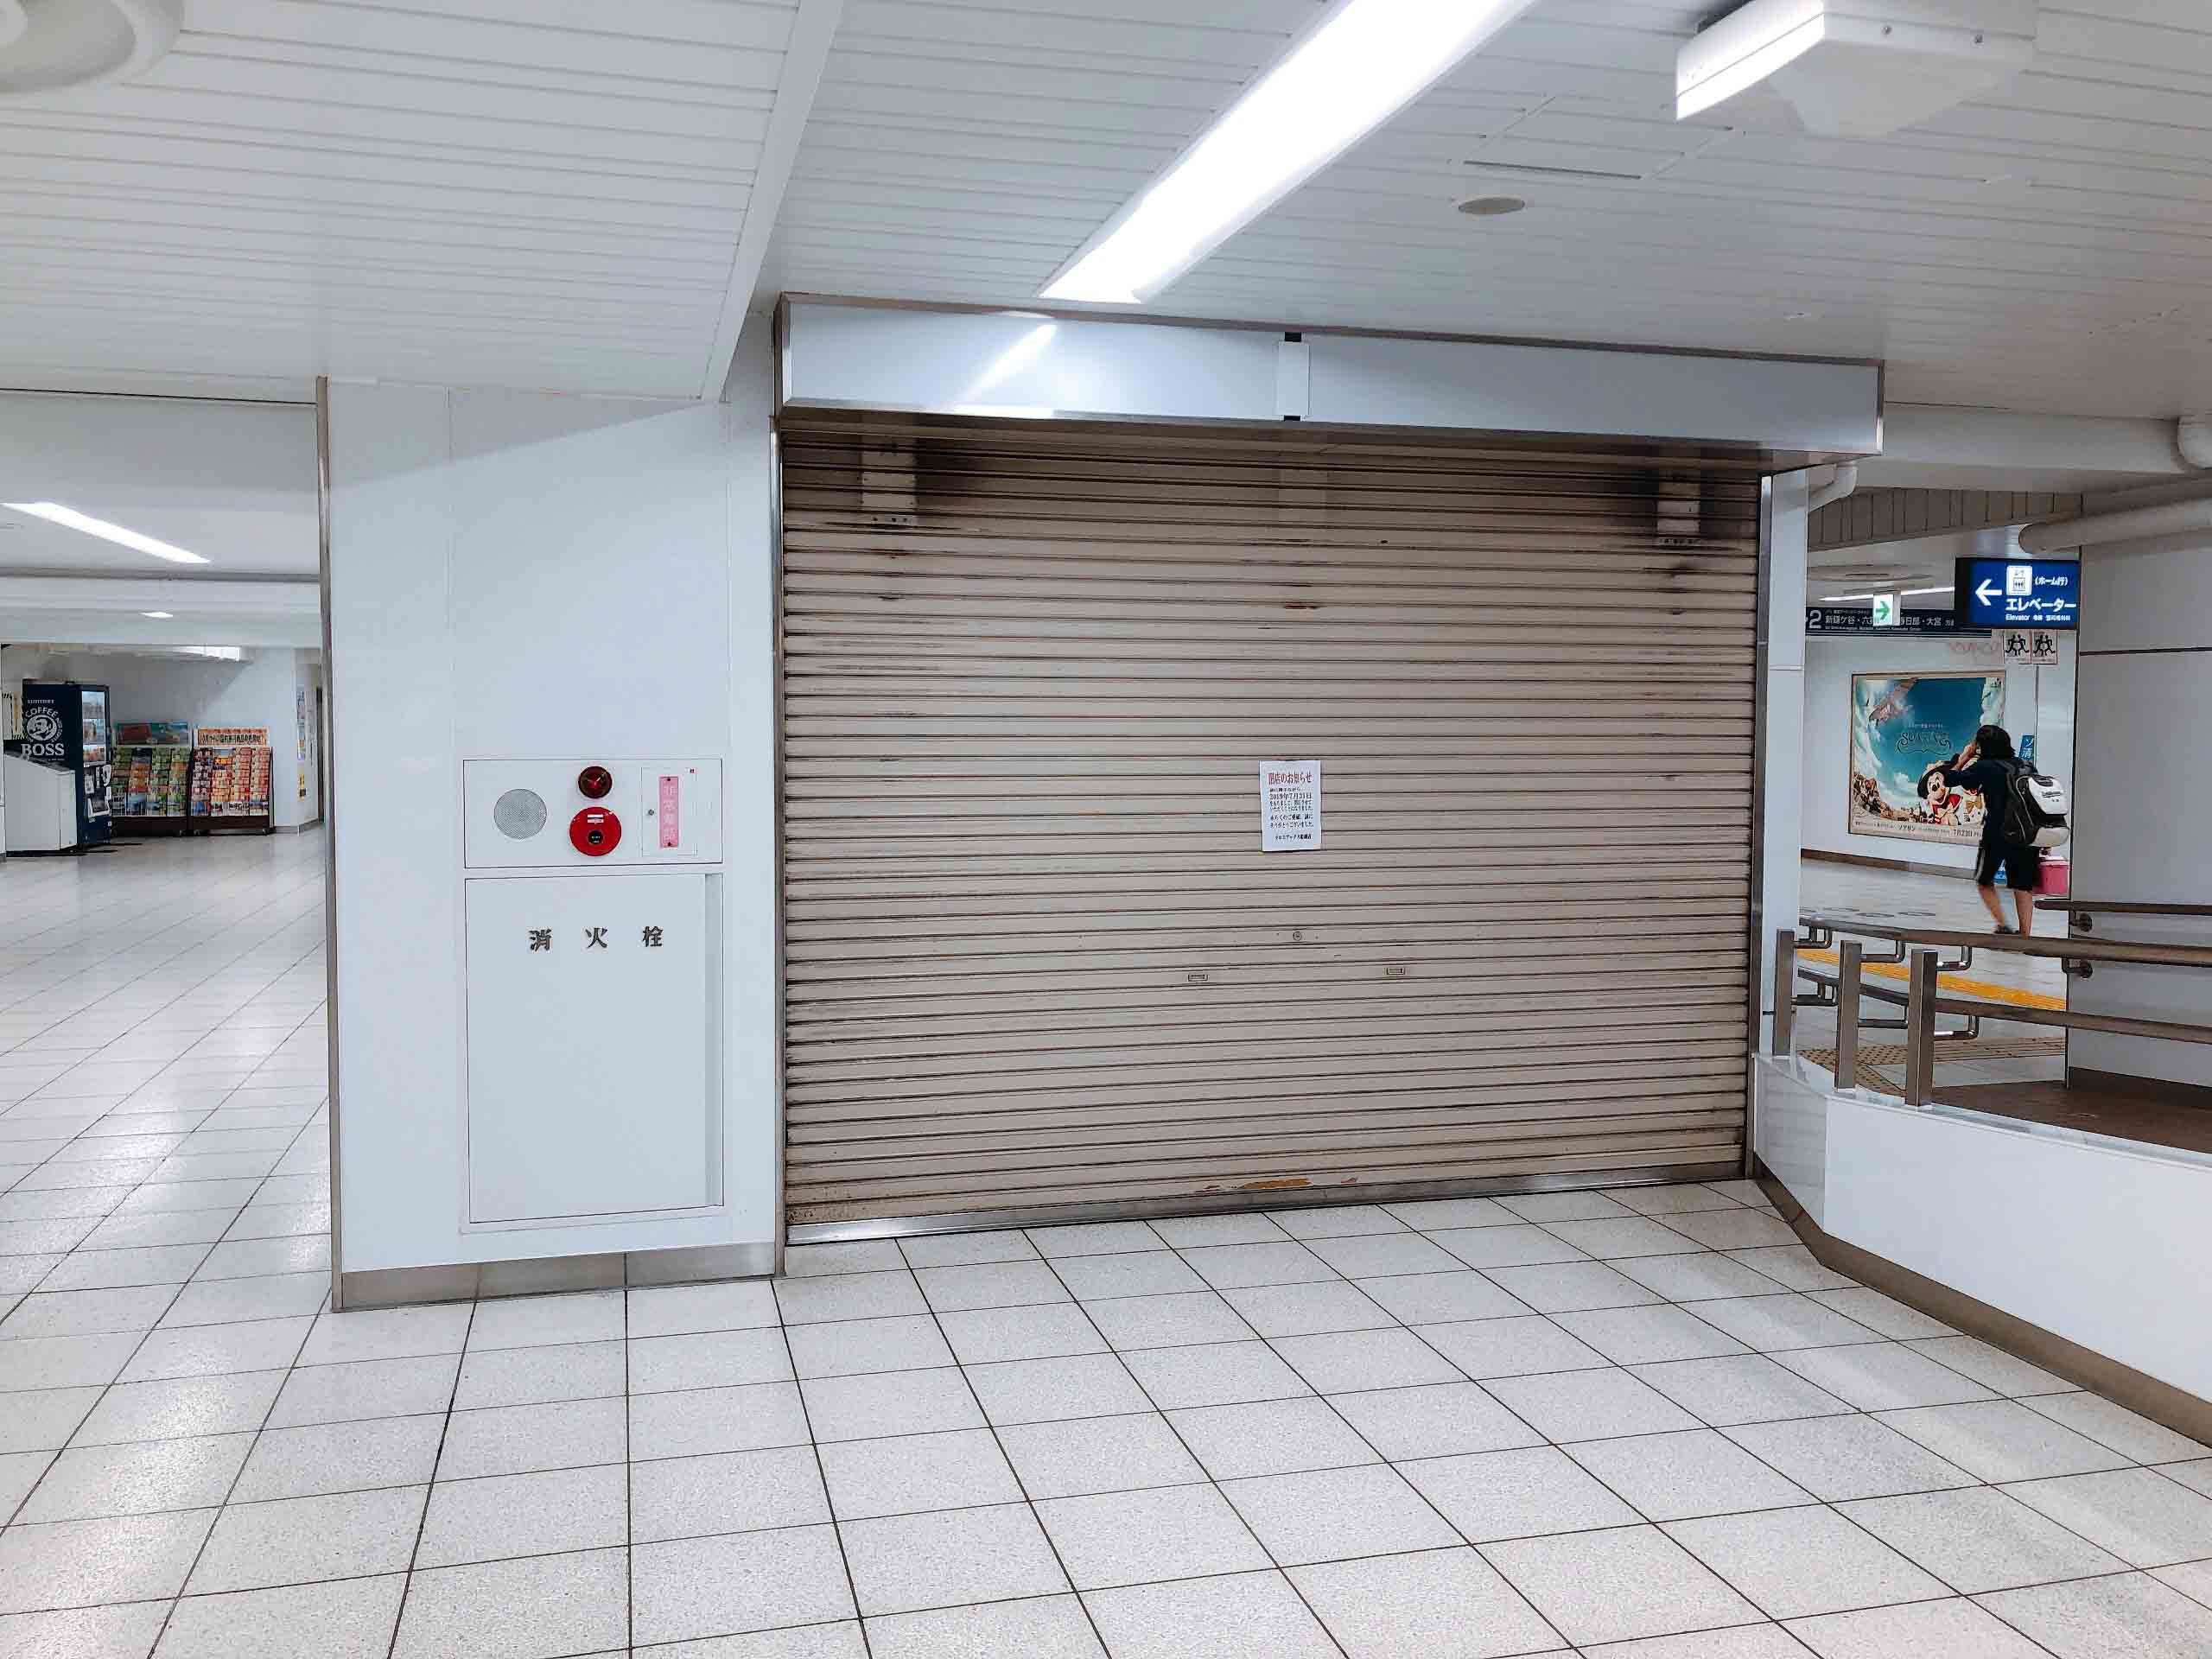 東武船橋駅構内の本屋 クロスブックス船橋店 が閉店していた 鎌ケ谷船橋あたり